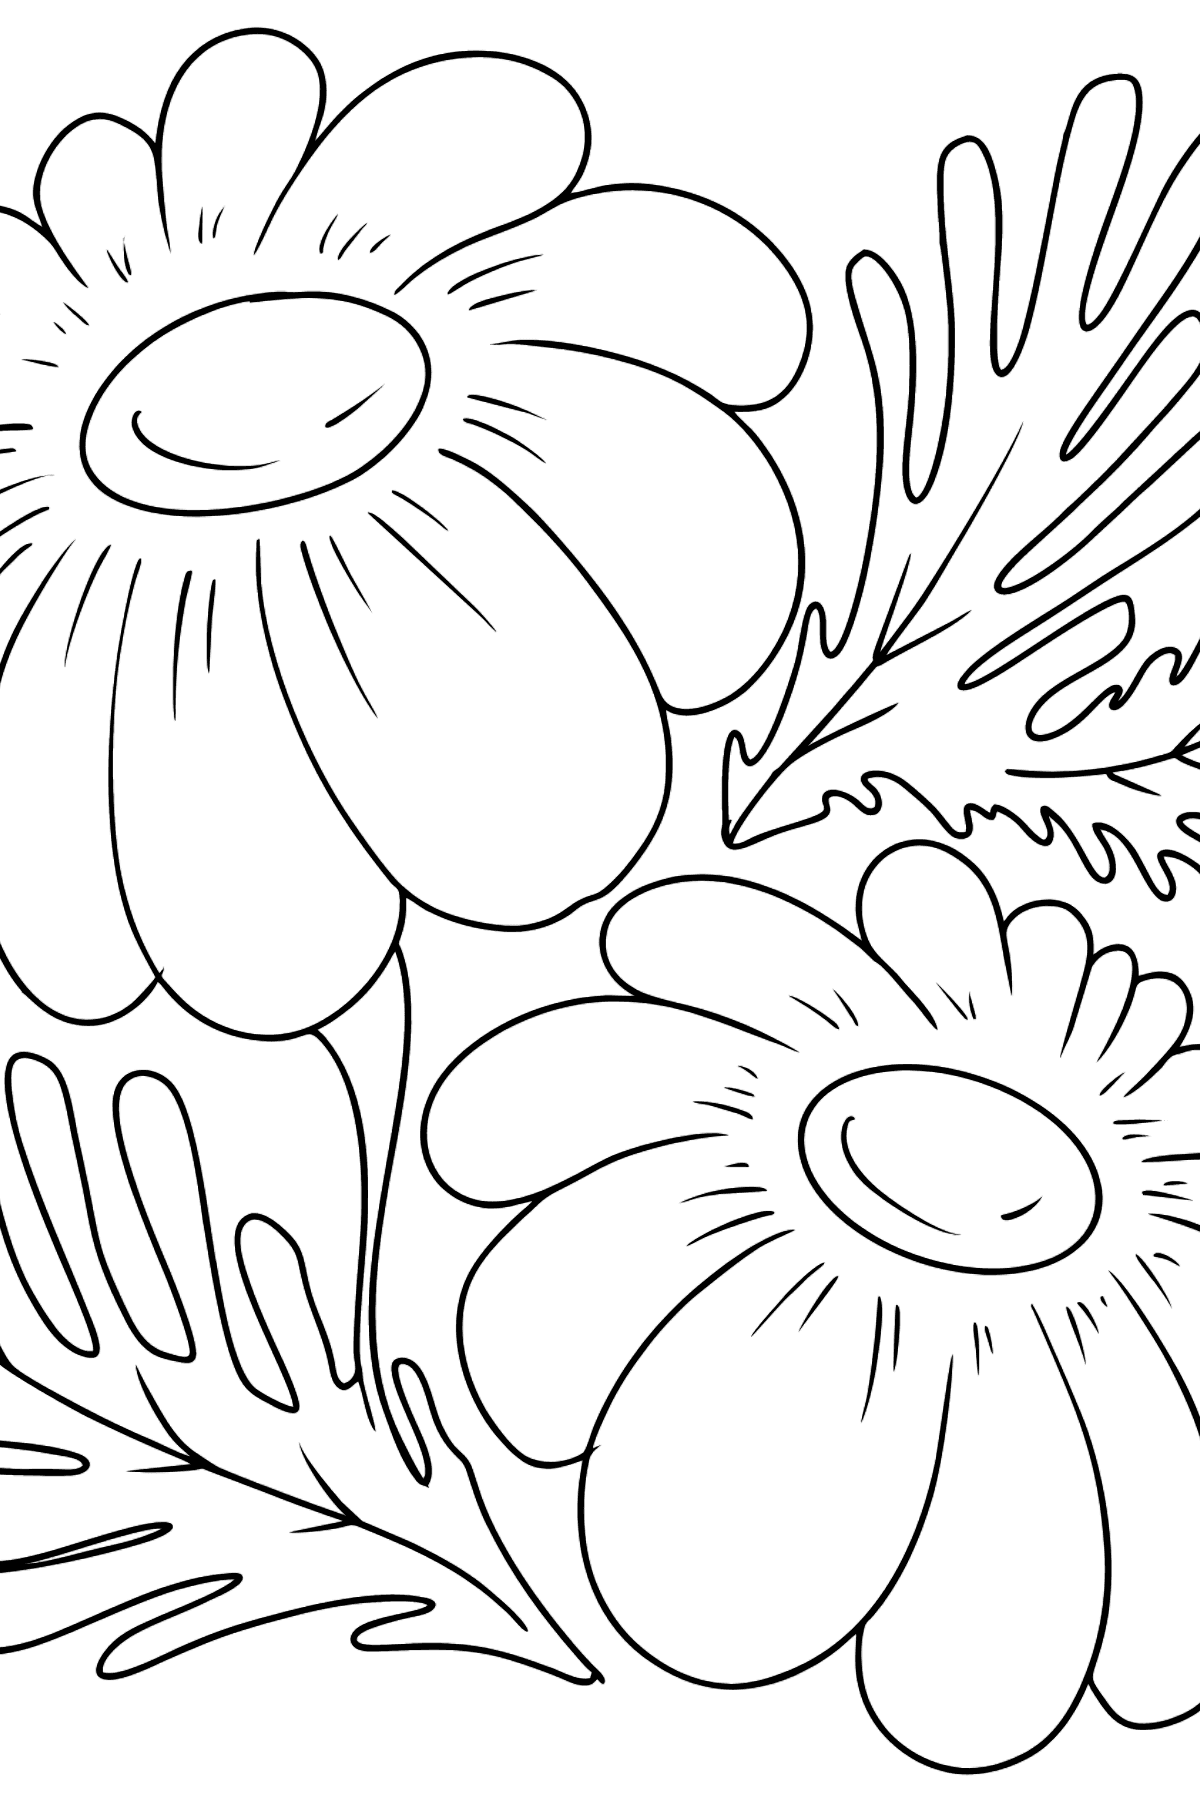 Desenho para colorir de flores de camomila - Imagens para Colorir para Crianças